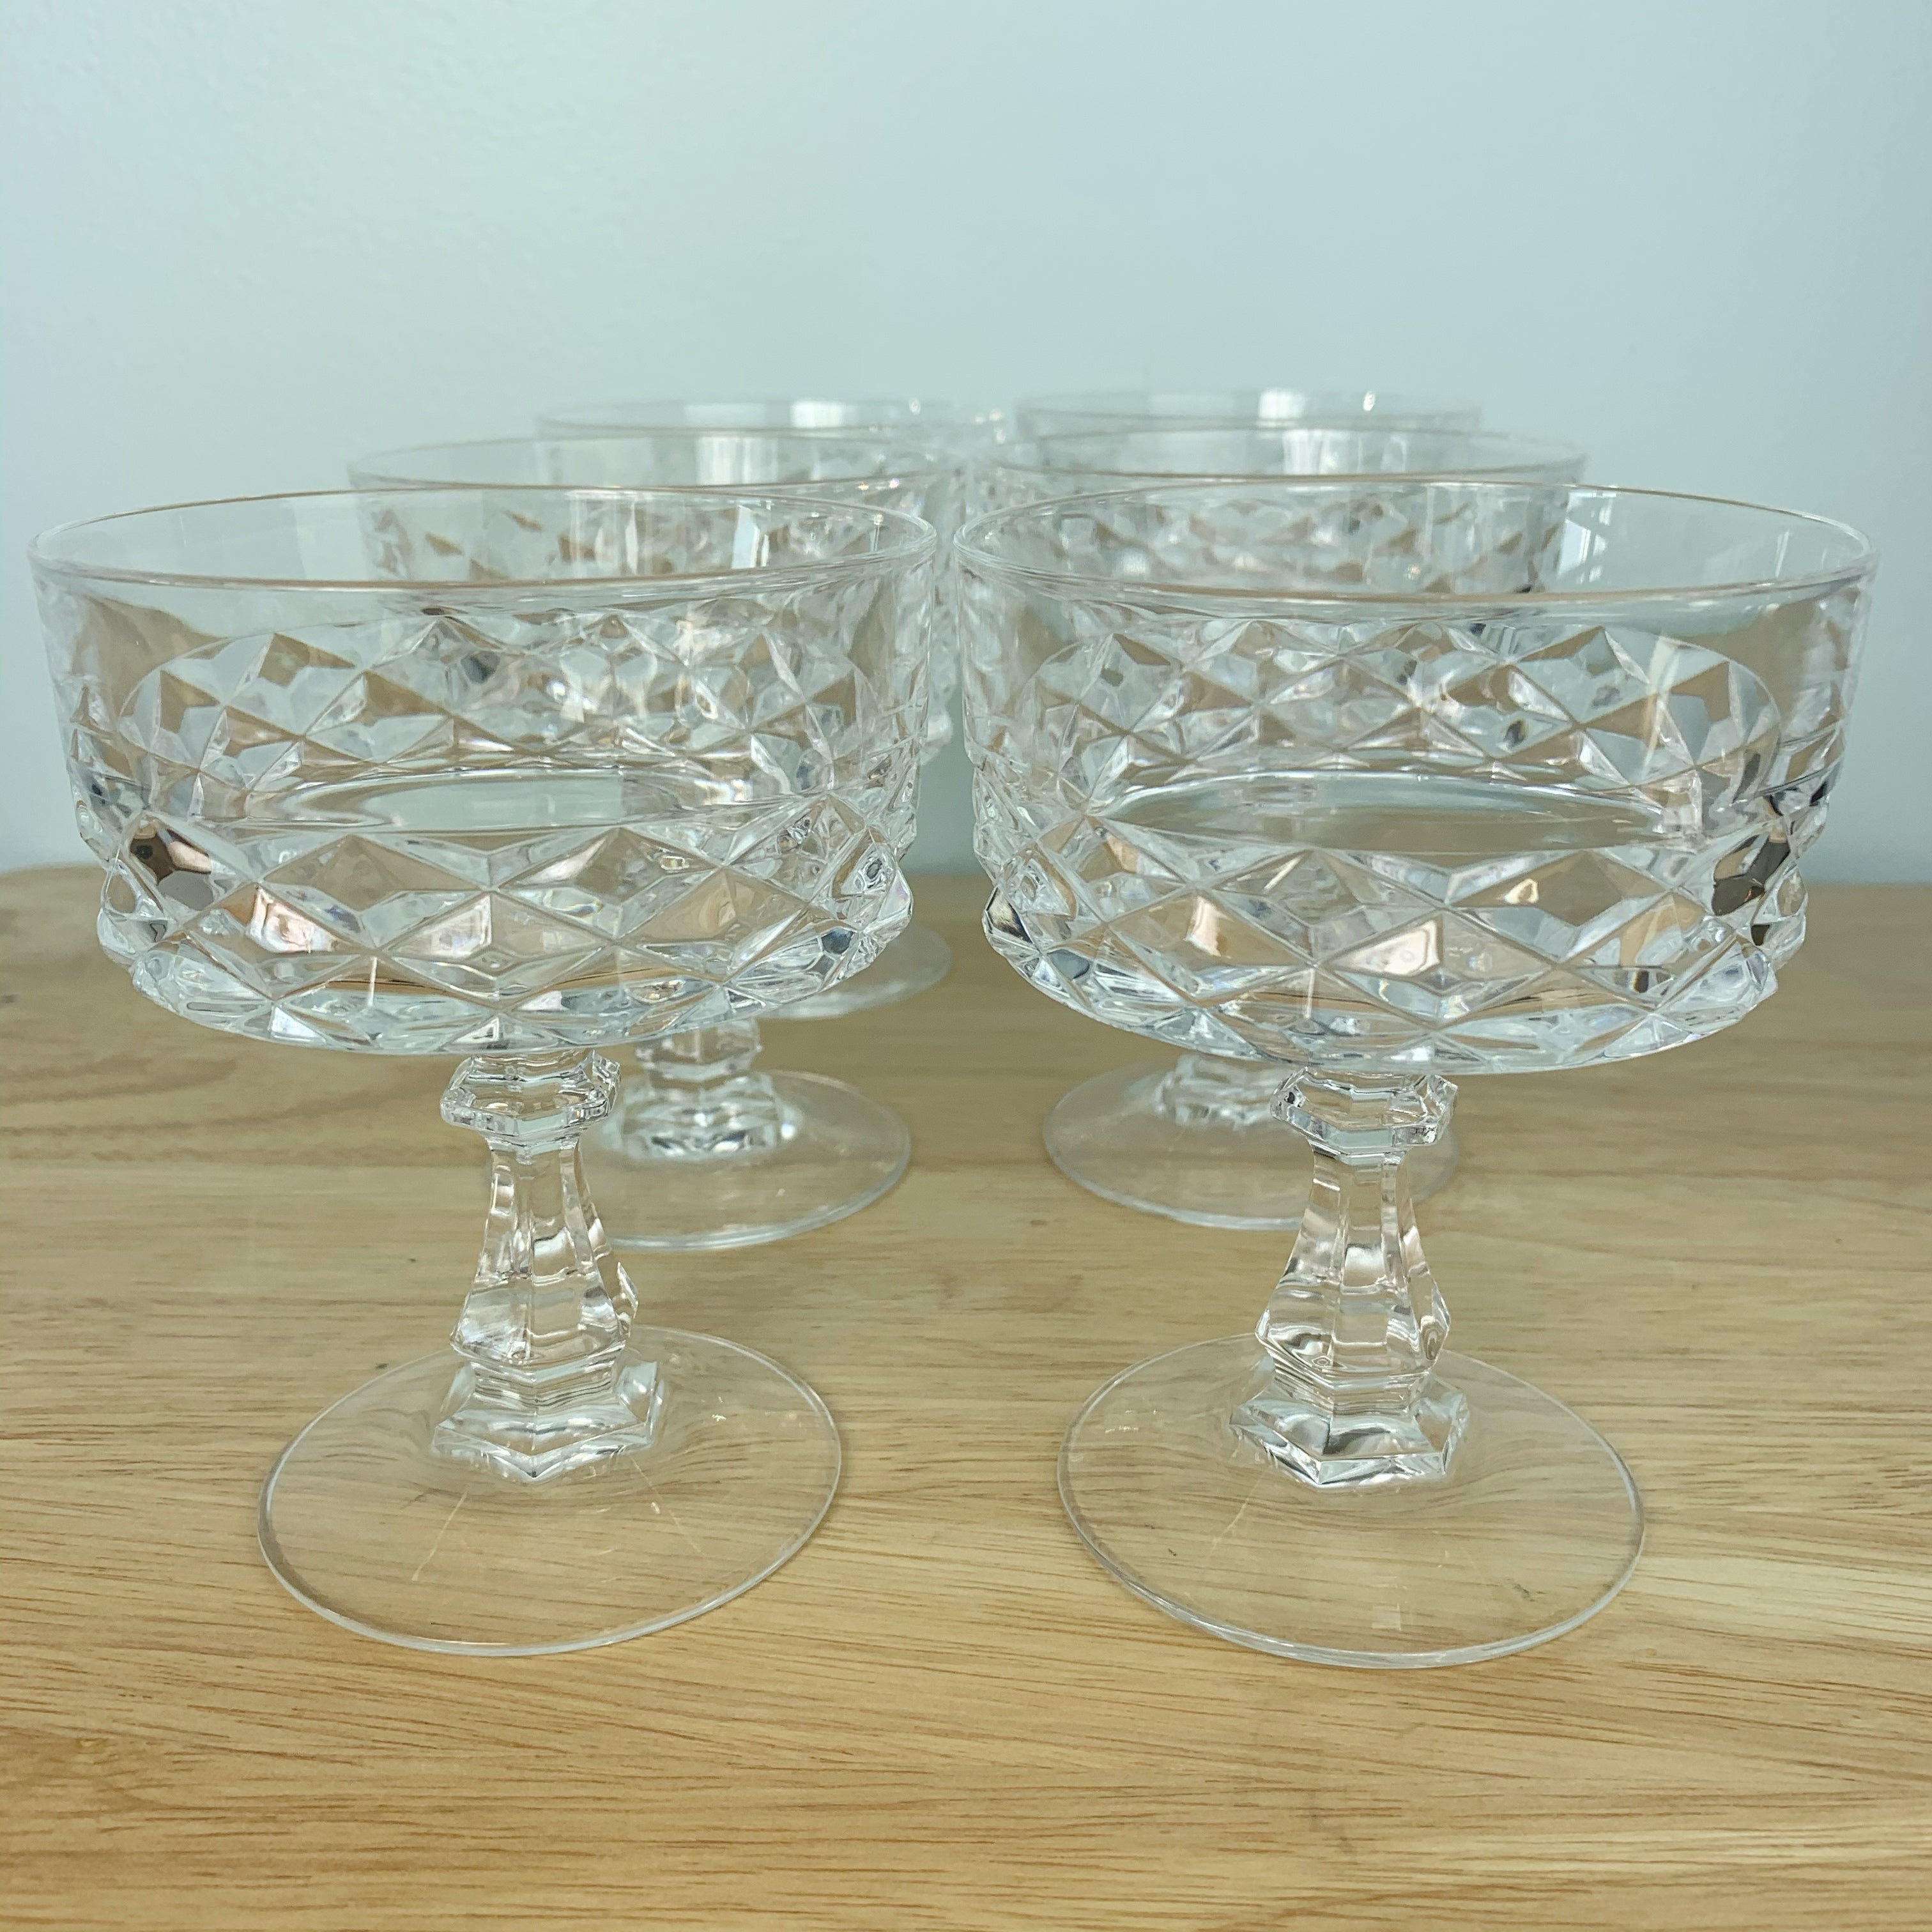 https://oldsoulgoodsco.com/cdn/shop/products/vintage-home-decor-crystal-champagne-glasses-3_3024x.jpg?v=1604284819